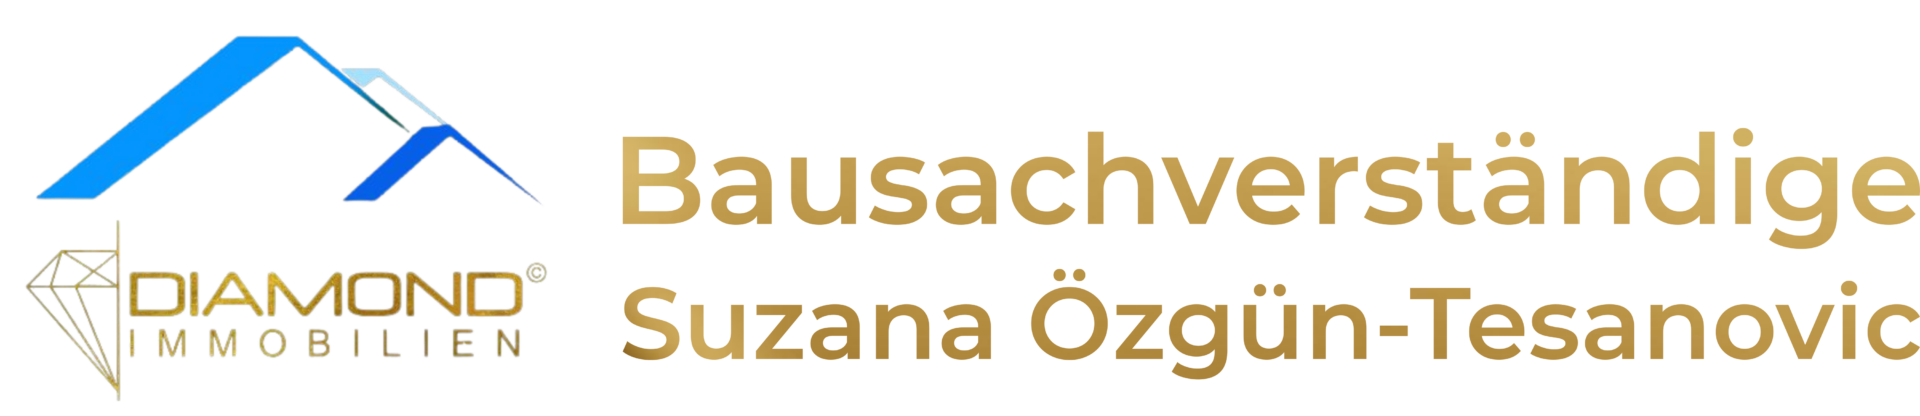 Sachverständigenbüro Suzana Özgün-Tesanovic